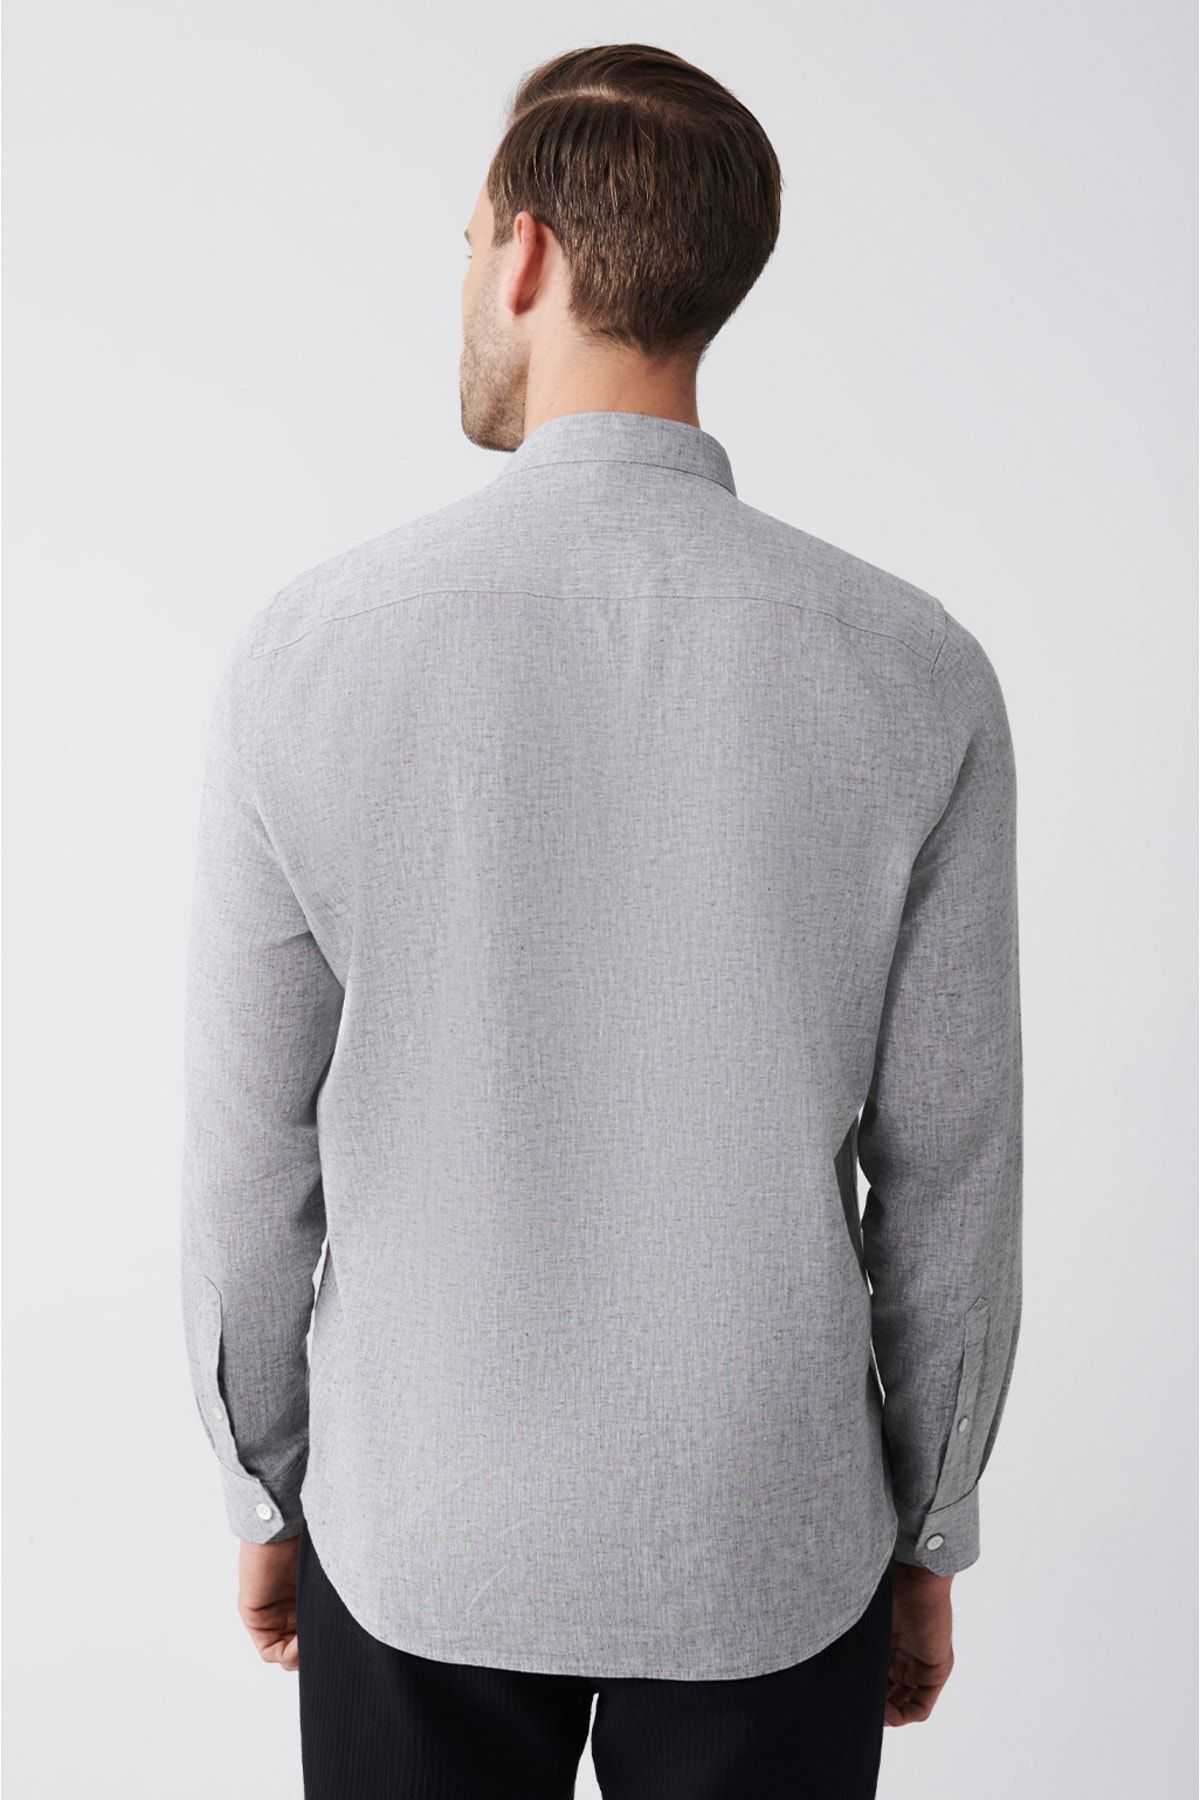 پیراهن کتانی یقه کلاسیک آنتراسیت مردانه ترکیبی استاندارد با برش معمولی